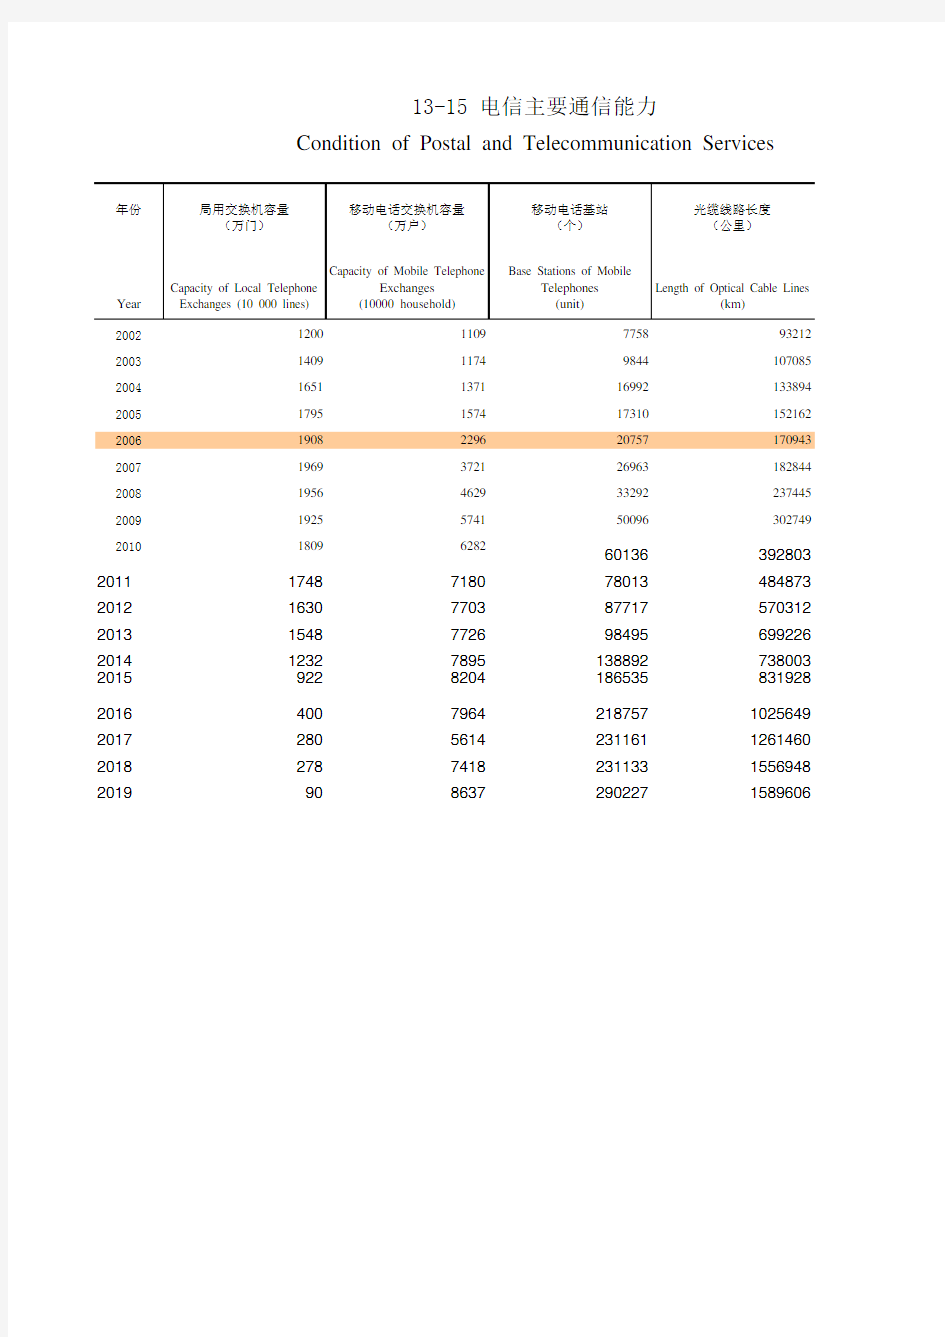 福建统计年鉴2020：13-15 电信主要通信能力(2002-2019)移动电话交换机容量基站 长途光缆线路长度